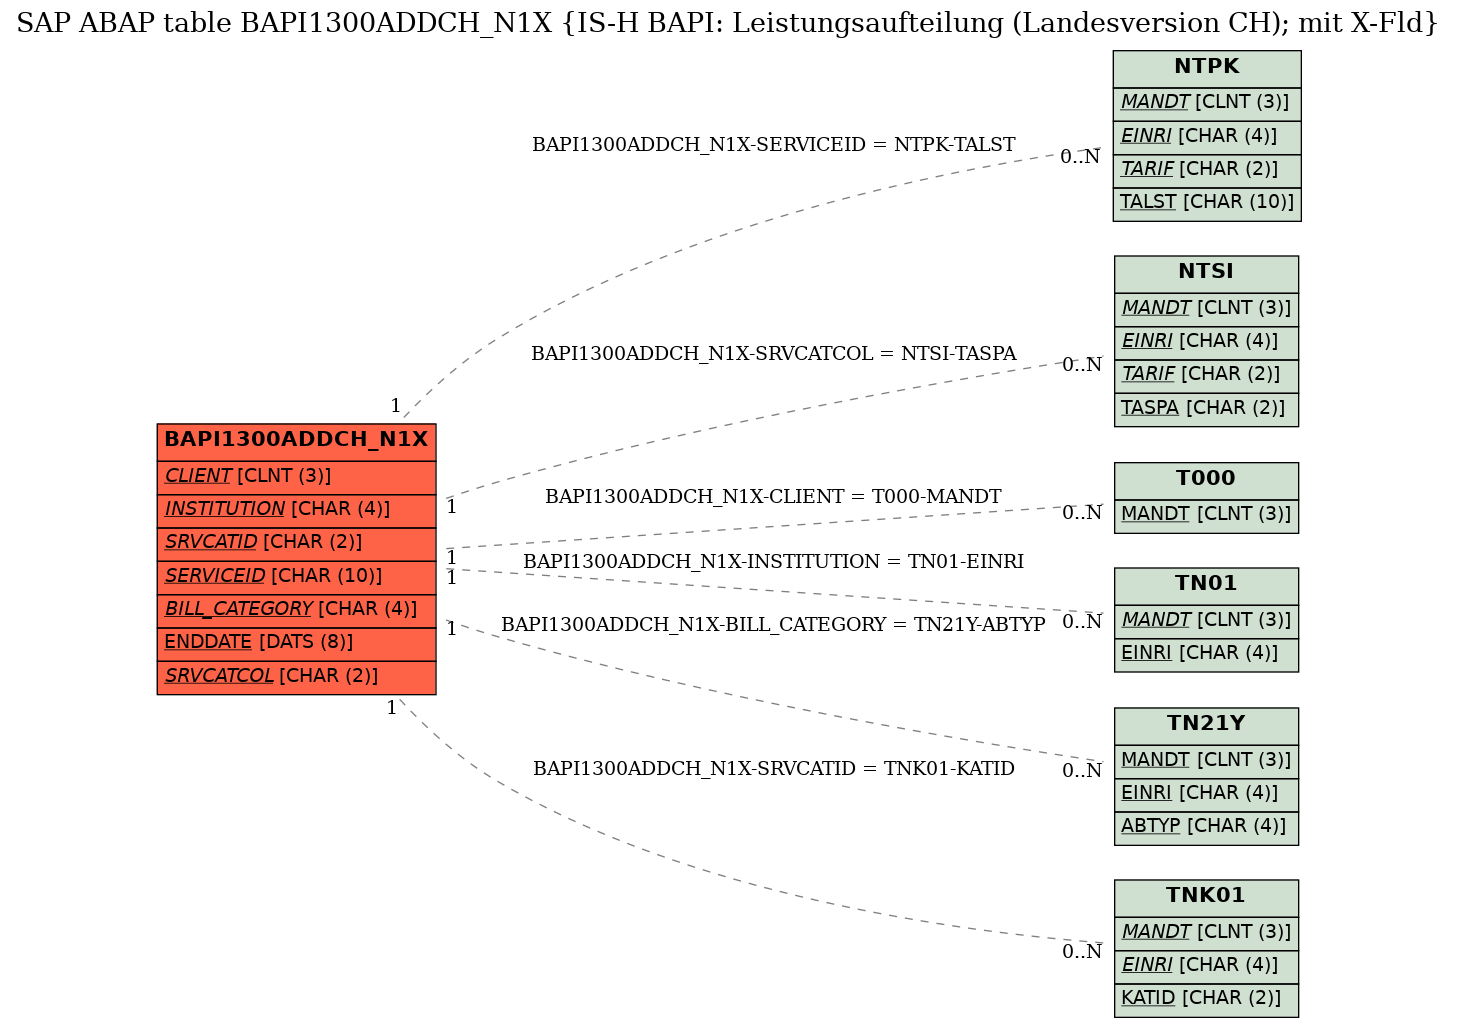 E-R Diagram for table BAPI1300ADDCH_N1X (IS-H BAPI: Leistungsaufteilung (Landesversion CH); mit X-Fld)